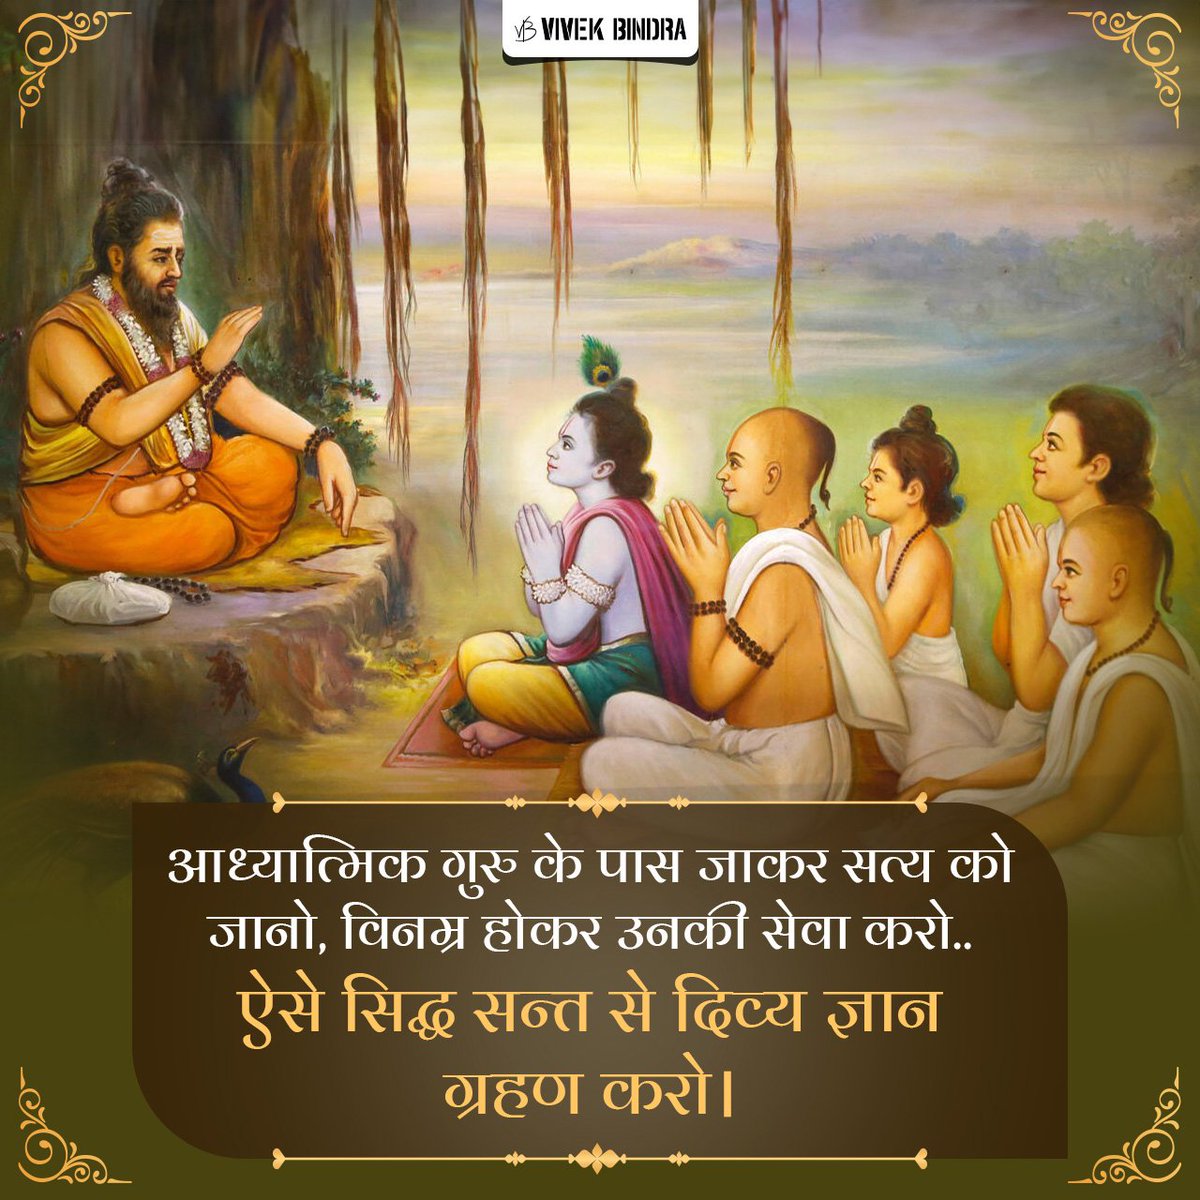 गुरु की कृपा से ही दिव्य ज्ञान की प्राप्ति हो सकती है।

#BhagavadGita #HareKrishna #HariBol #DrVivekBindra #BadaBusiness